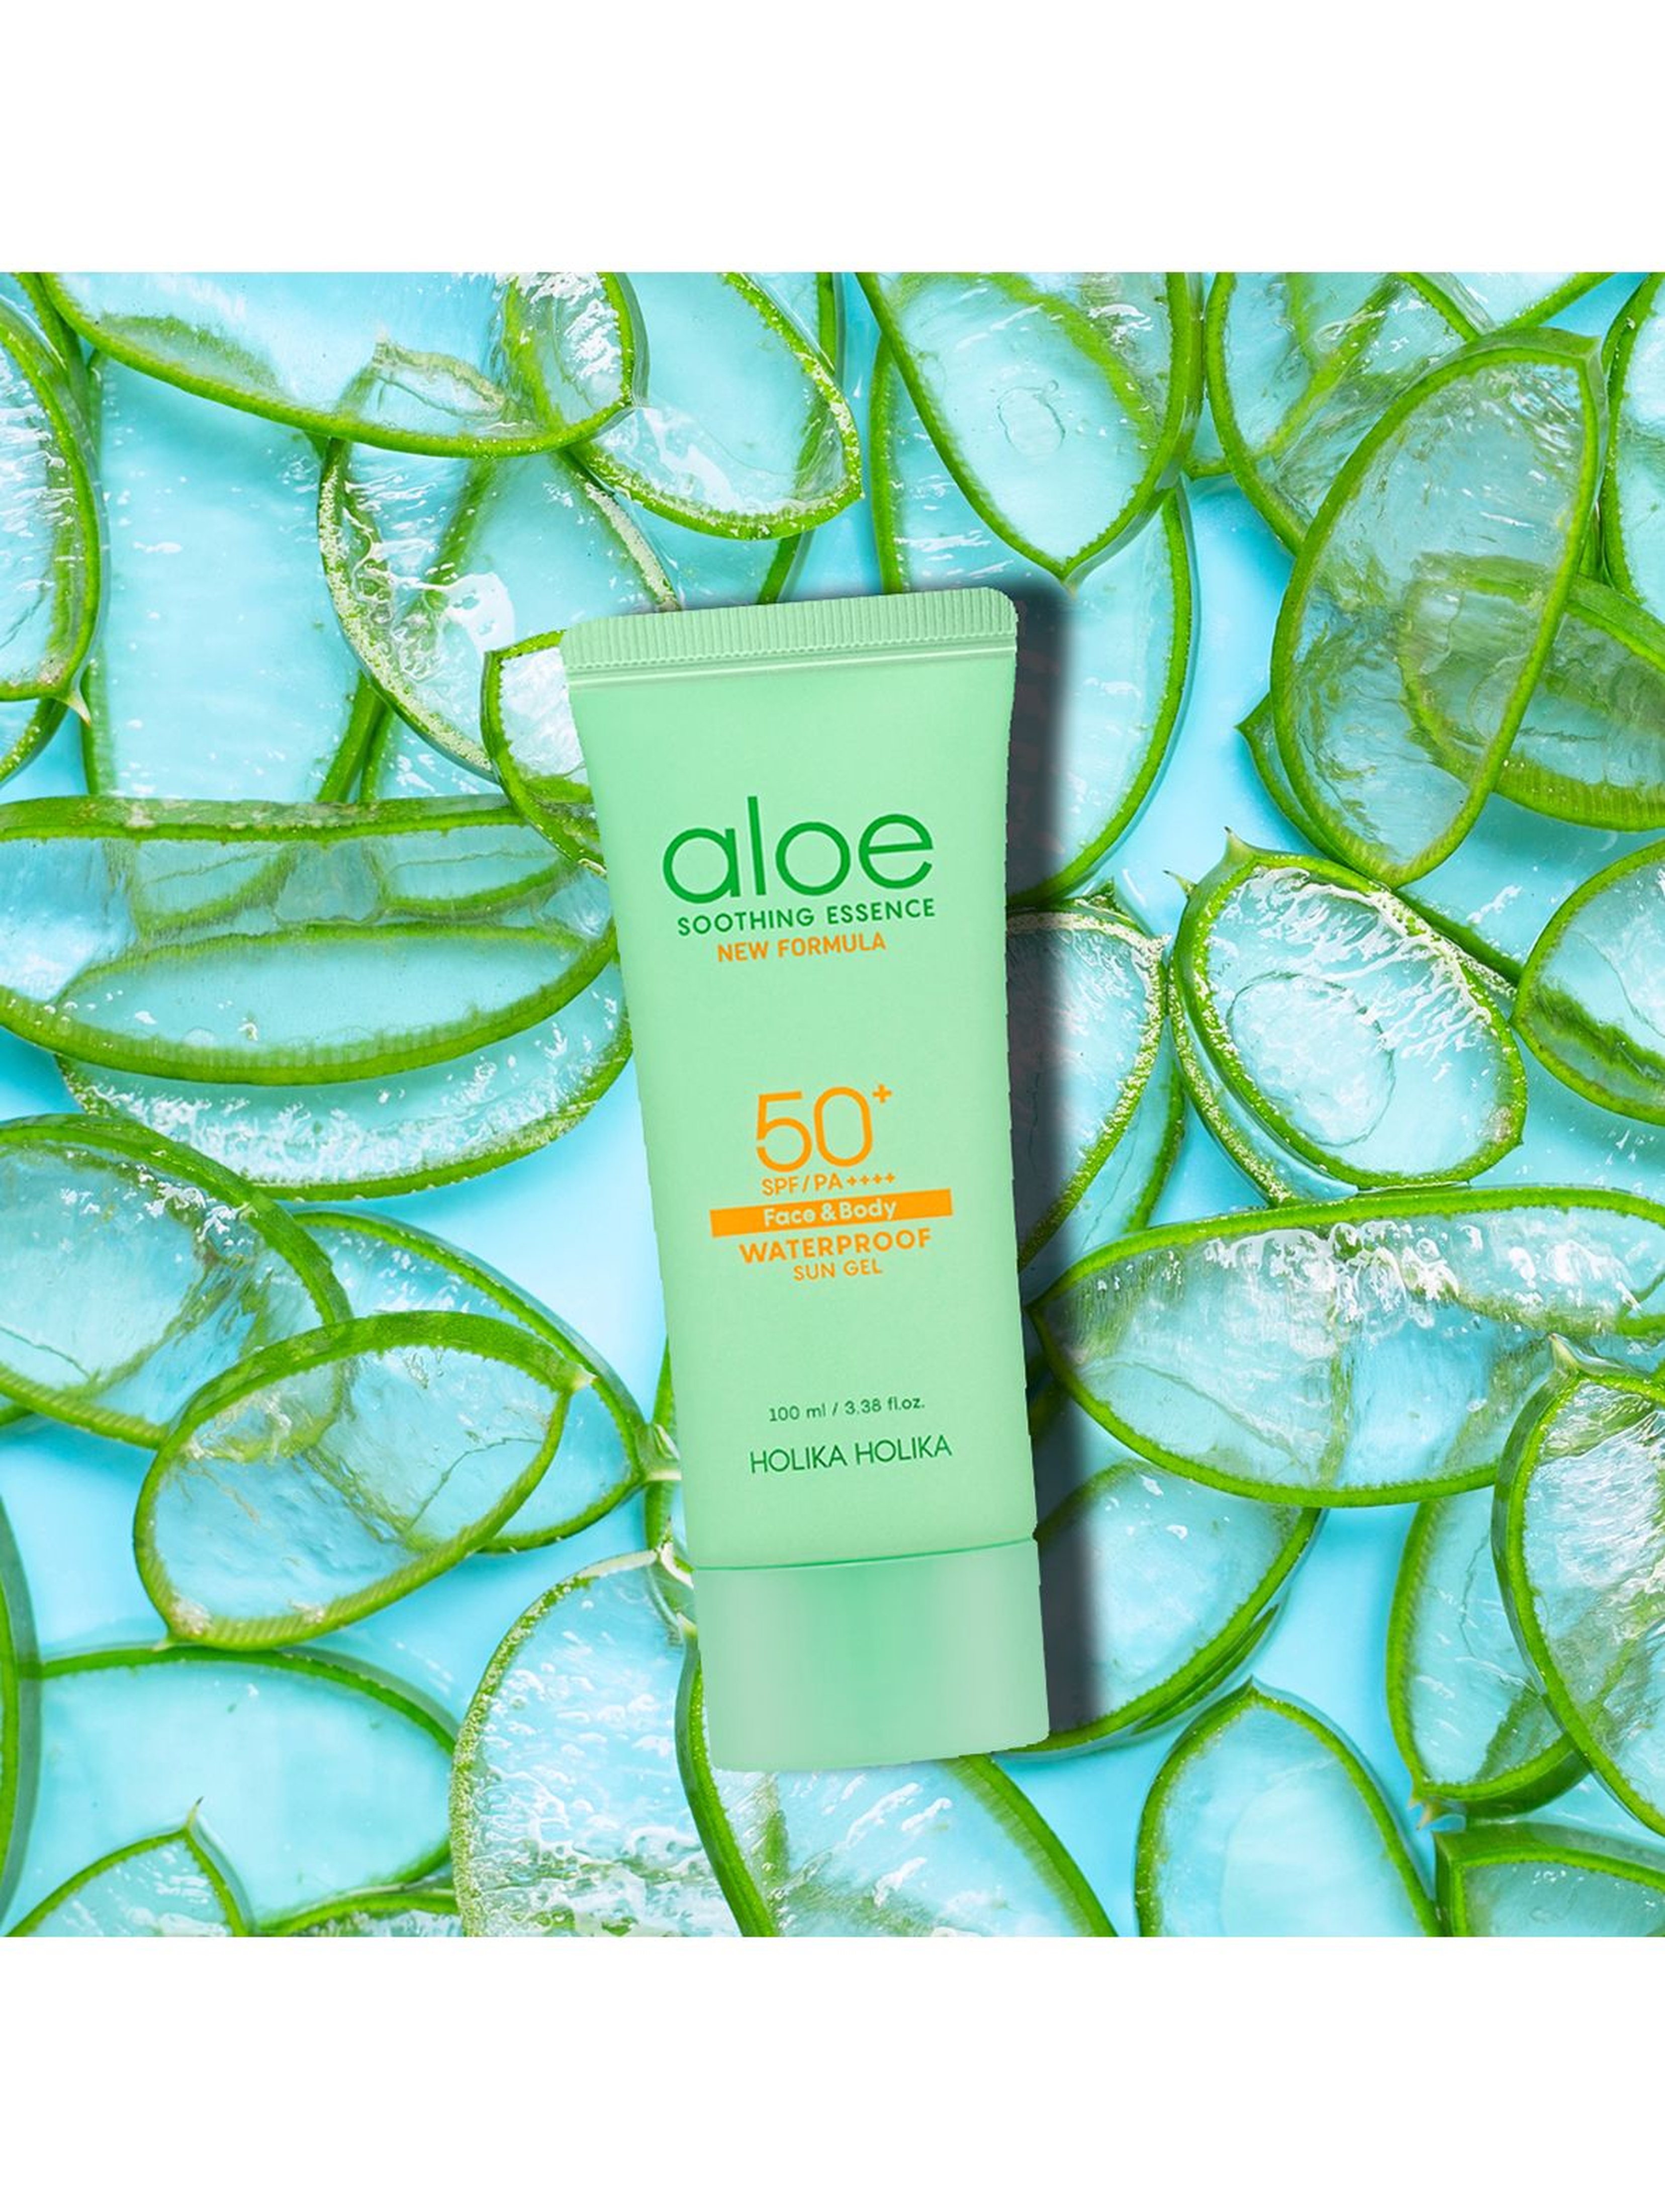 Holika Holika Aloe Soothing Essence Face & Body Waterproof Sun Gel SPF50+ żel przeciwsłoneczny do twarzy i ciała - 100ml